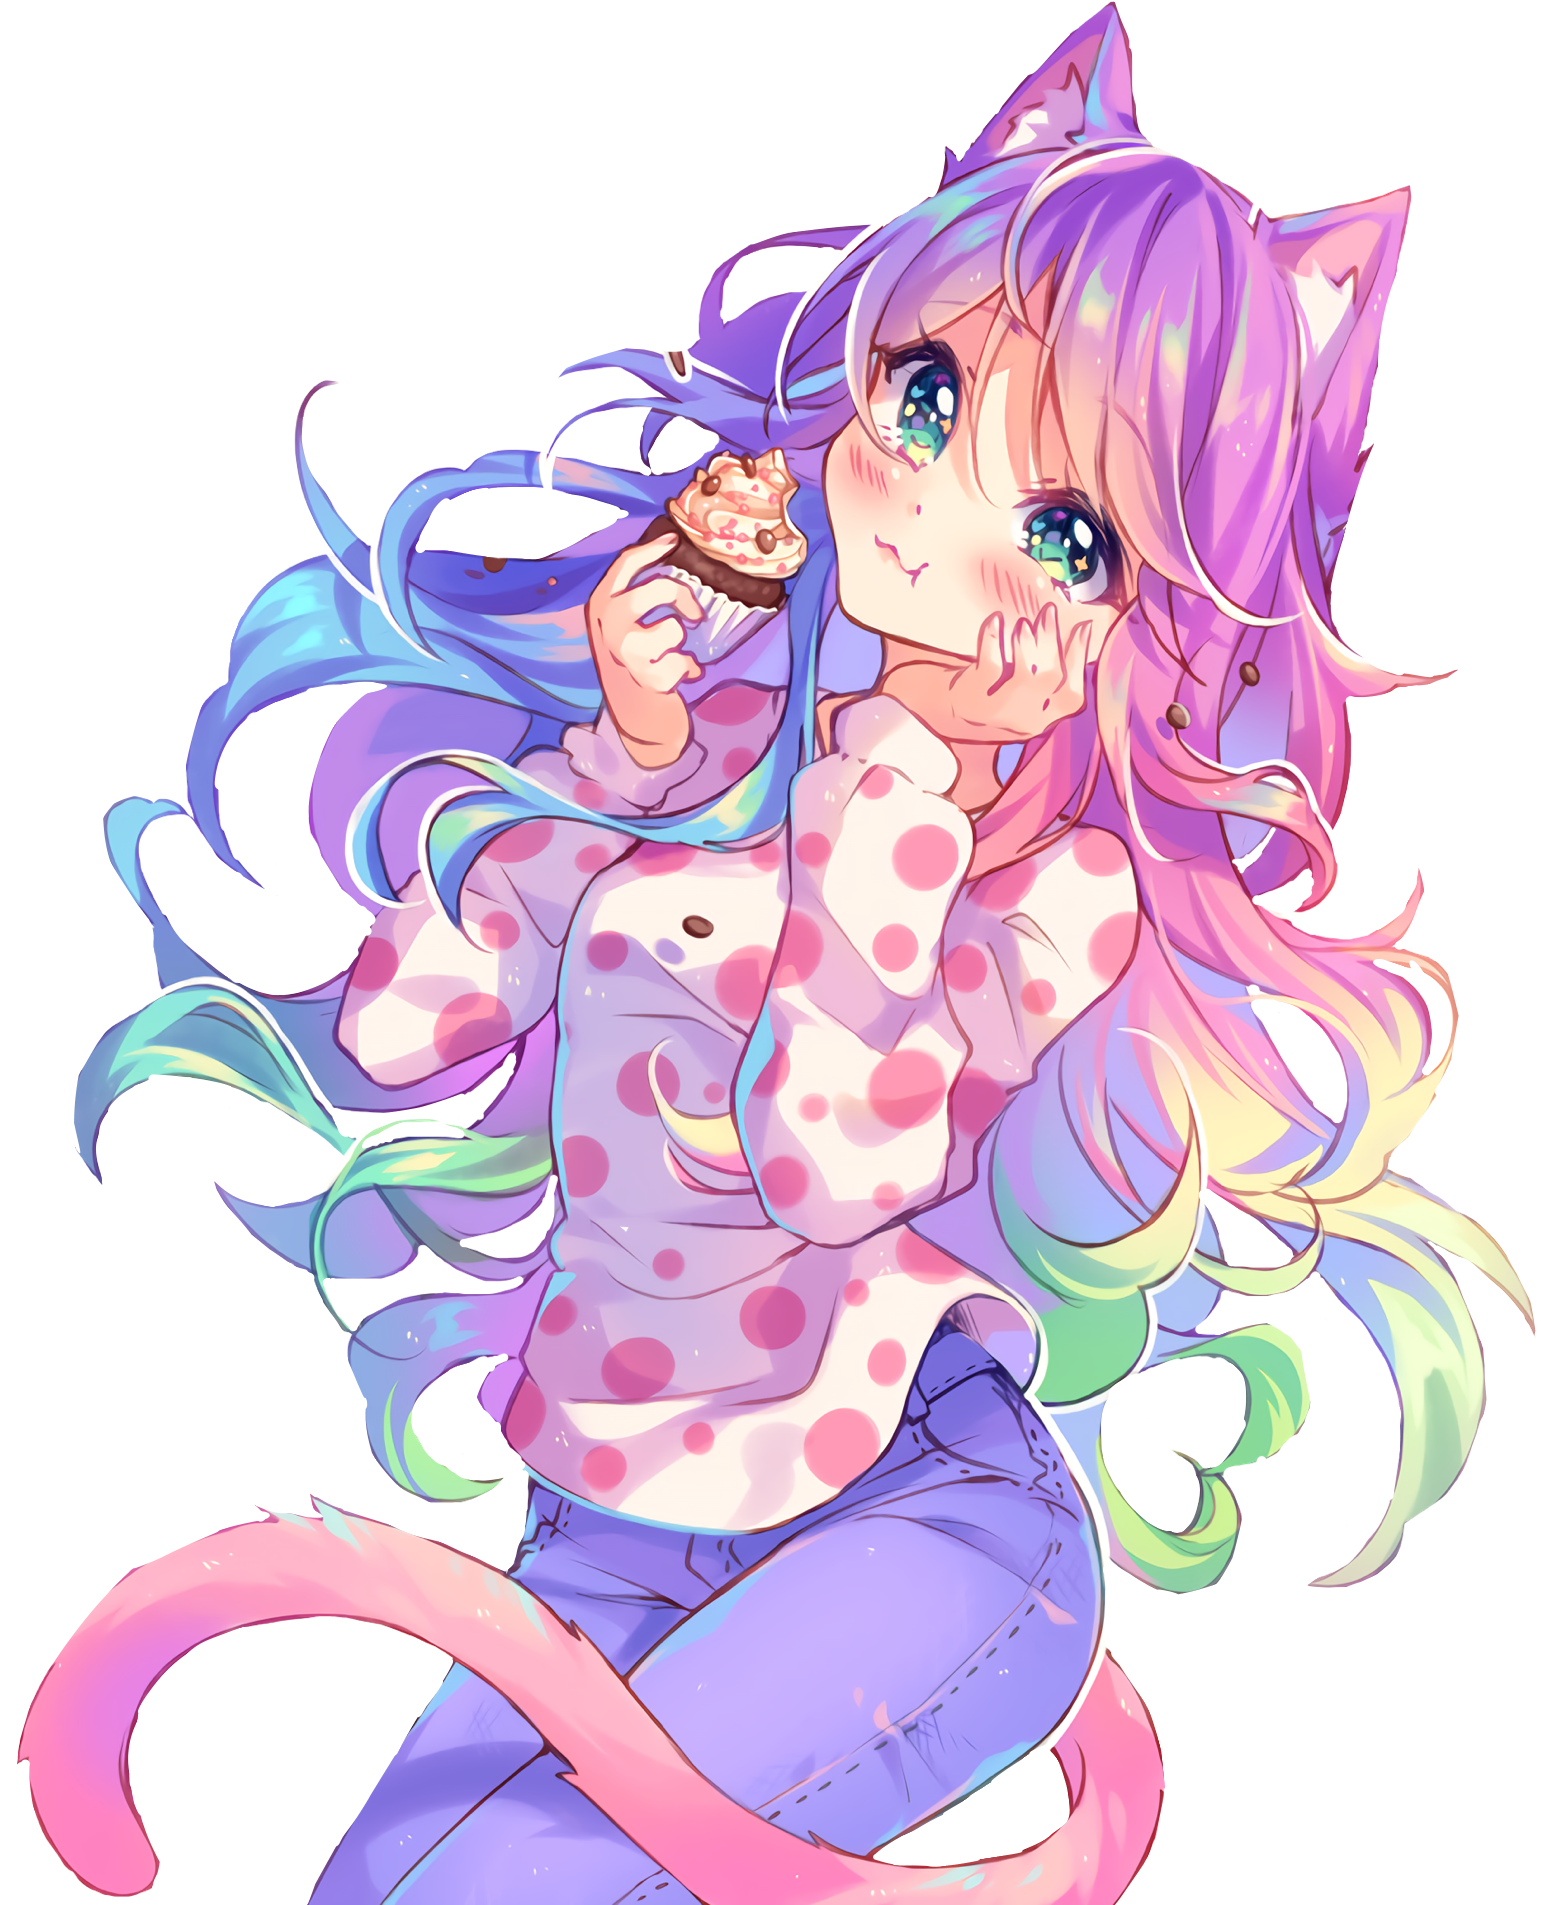 Cute Anime Girl With Rainbow Hair